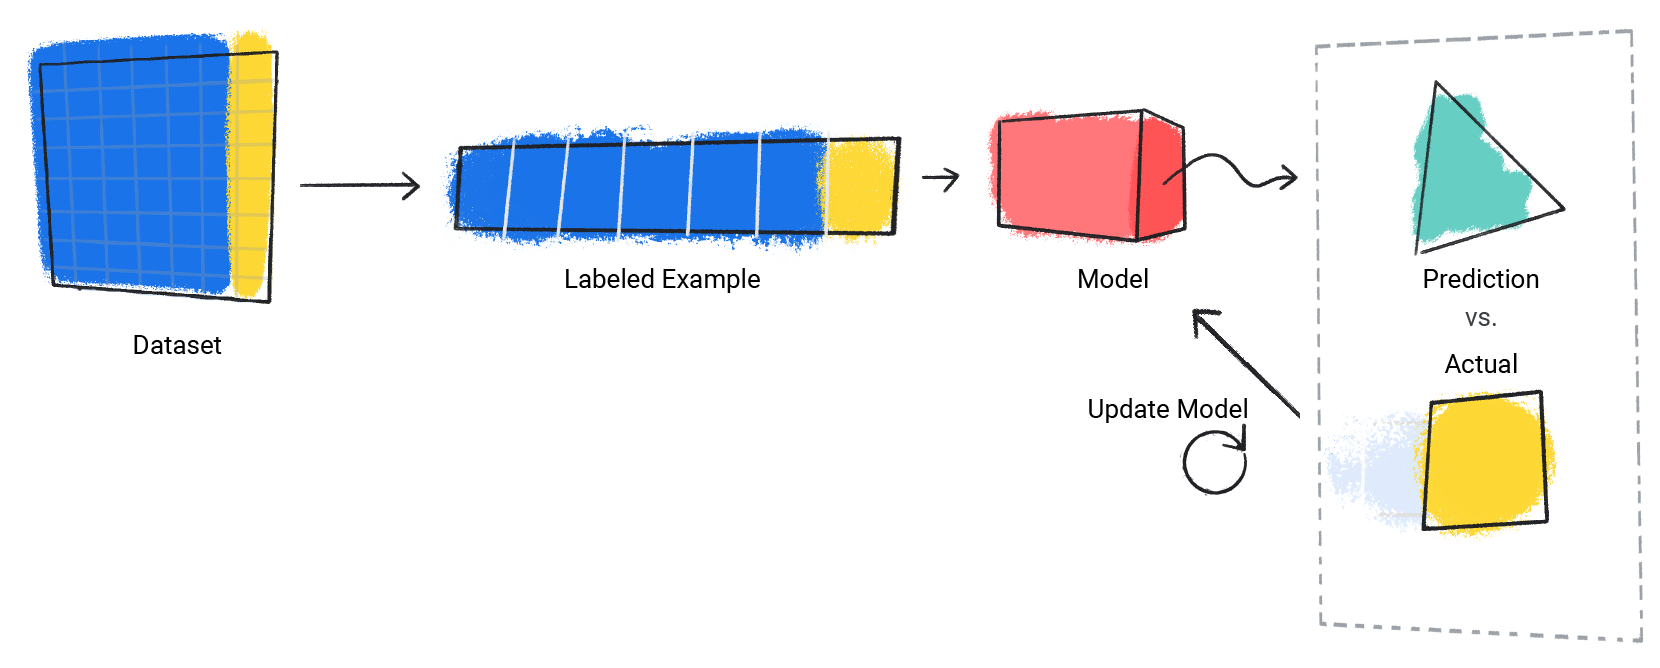 실제 값과 예측 프로세스를 반복하는 모델의 이미지입니다.